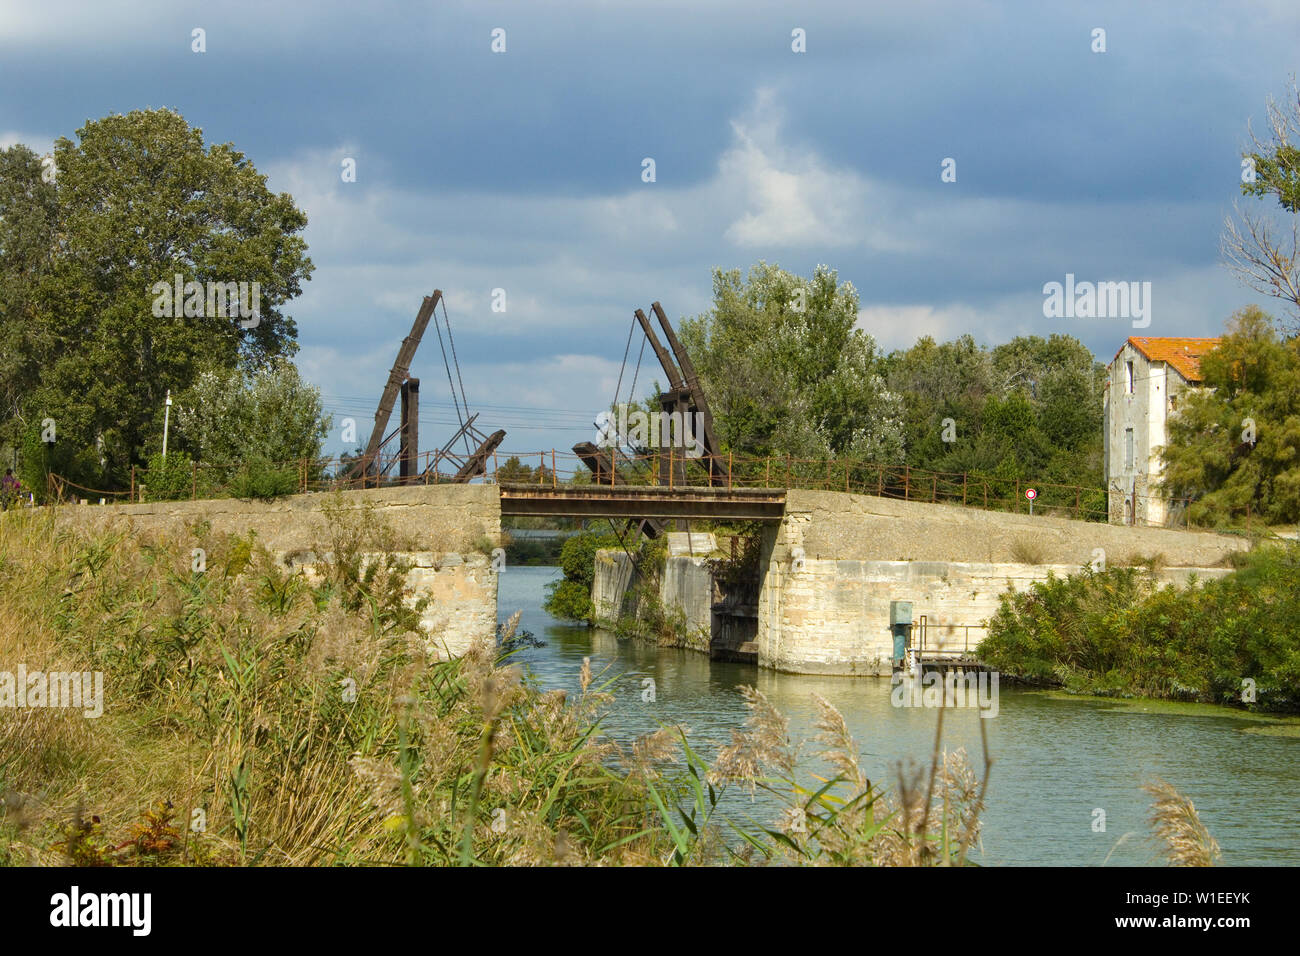 Brücke von Langlois (Brücke von Arles),  Motiv, das von van Gogh oft gemalt wurde -  object often painted by van Gogh Stock Photo